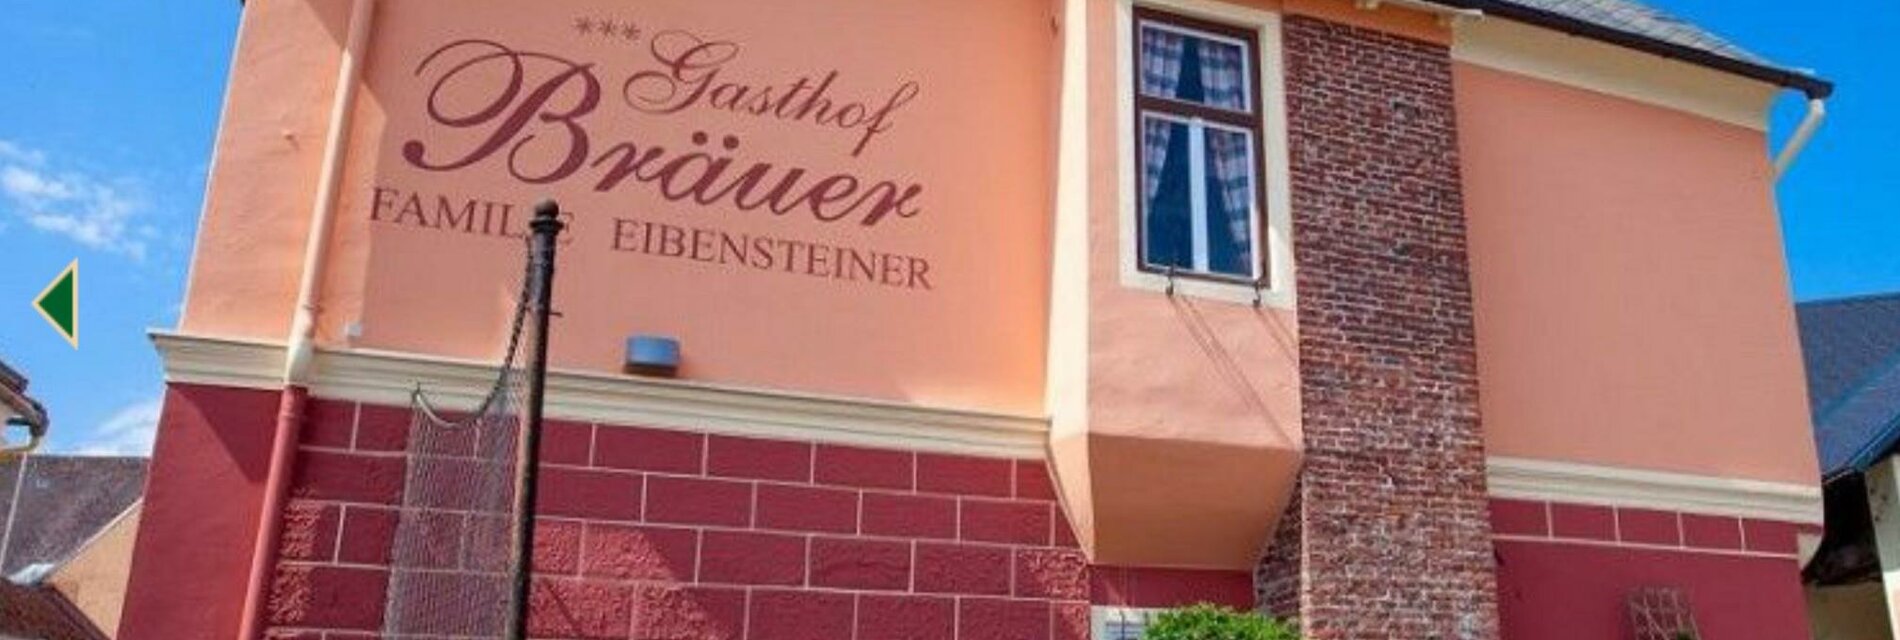 Gasthof Bräuer-Außenansicht-Murtal-Steiermark